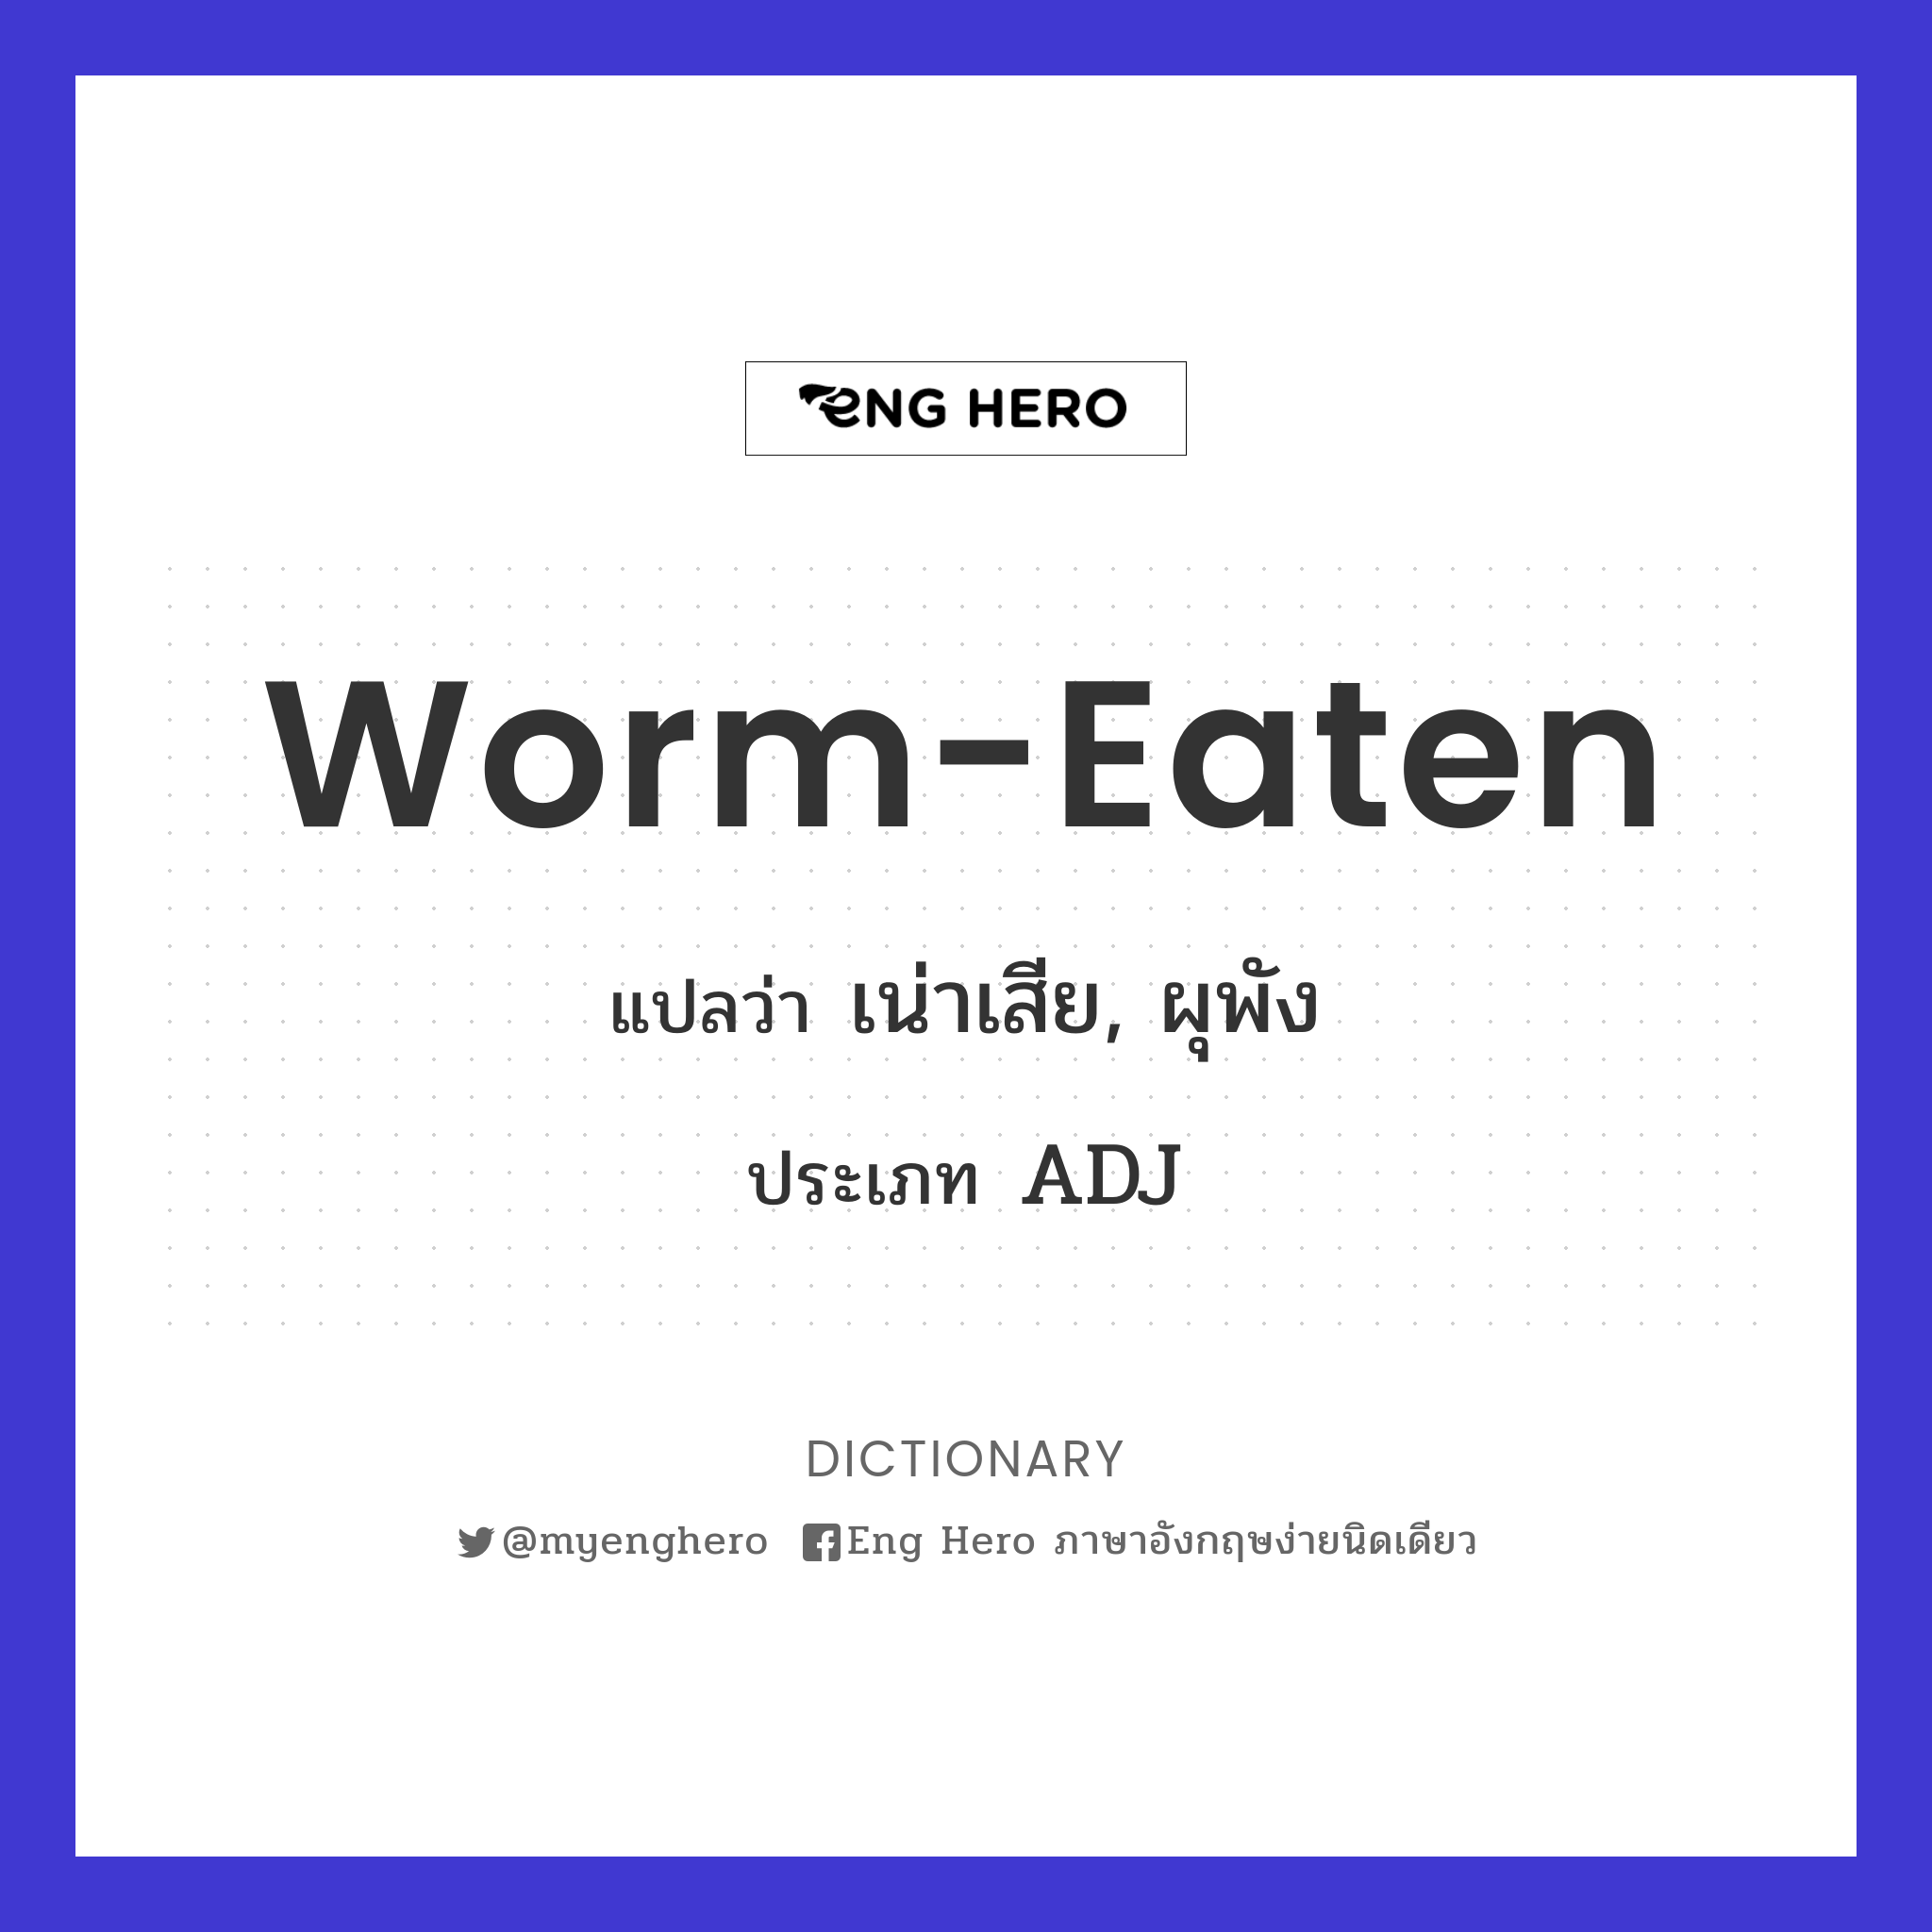 worm-eaten